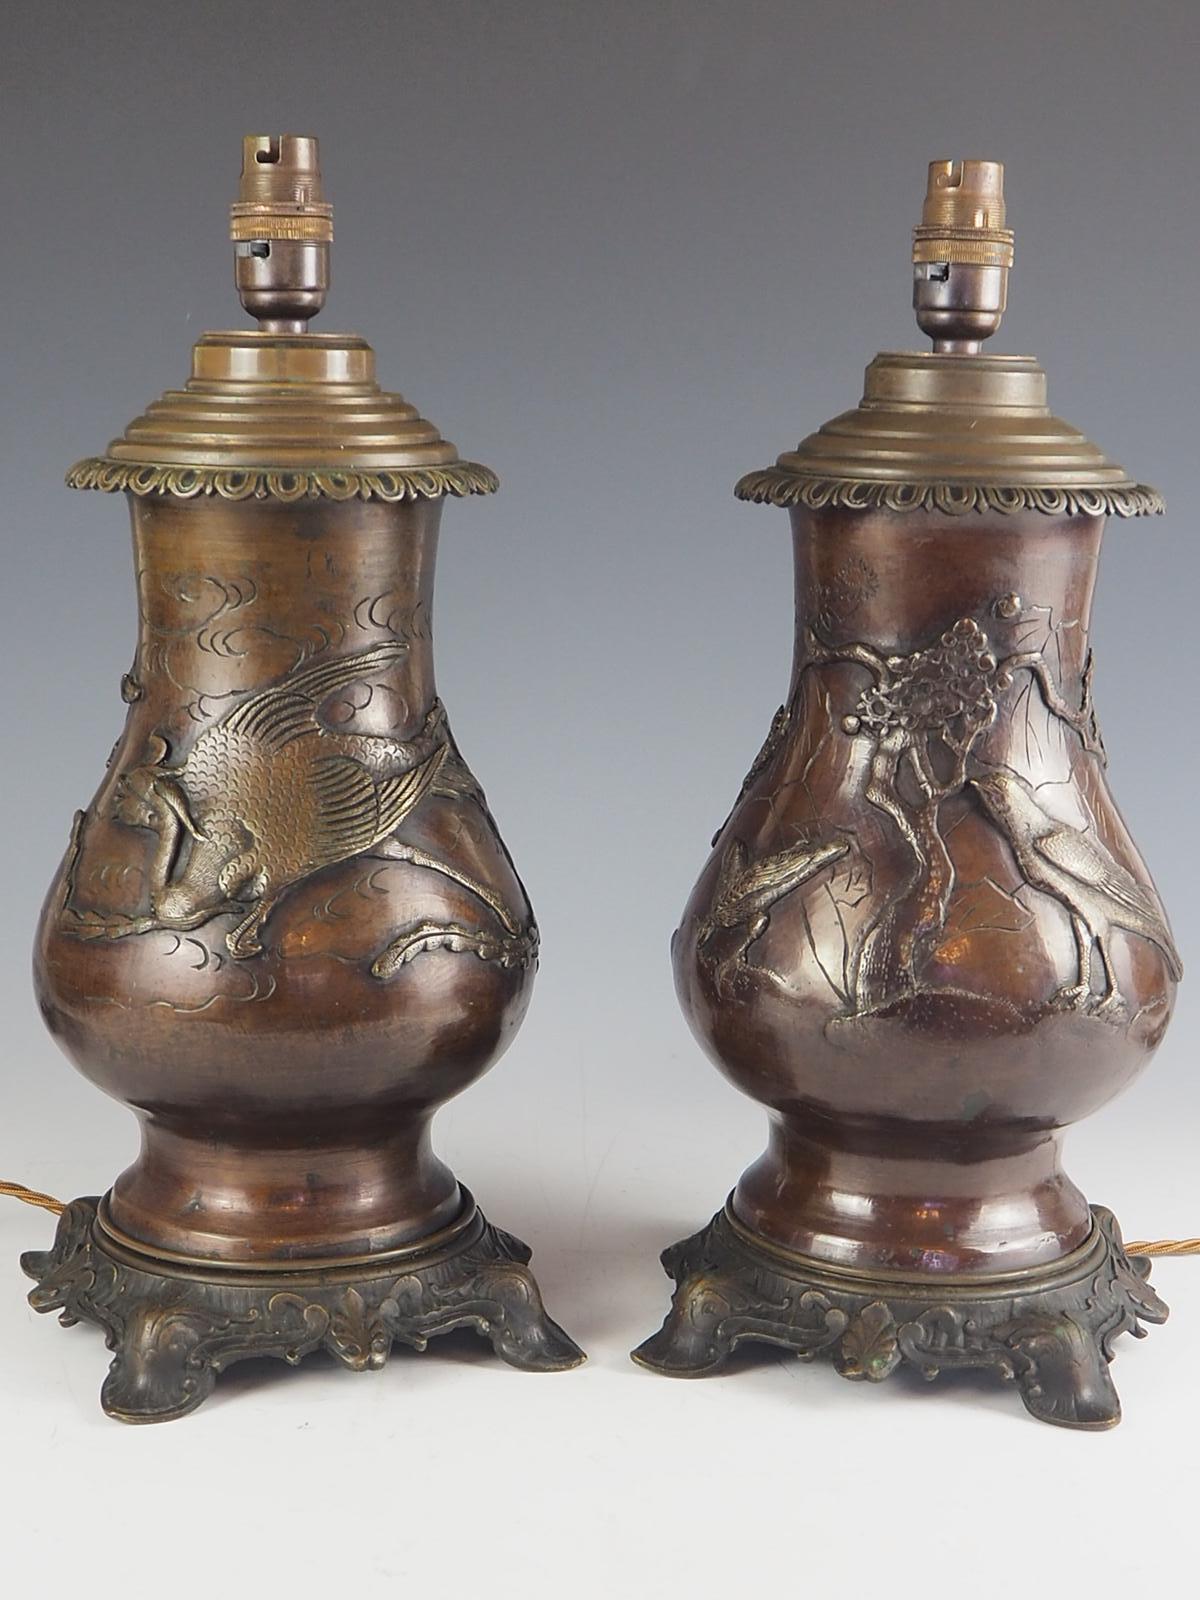 Ein schönes Paar japanischer Öllampen aus Bronze aus der Zeit um 1880, die jetzt auf Strom umgestellt sind.

Fein gegossene und detaillierte Bronze mit Hochrelief beeindruckende Drachen, Drachen, Vögel, Bäume und Früchte.

Eine Vase ist mit